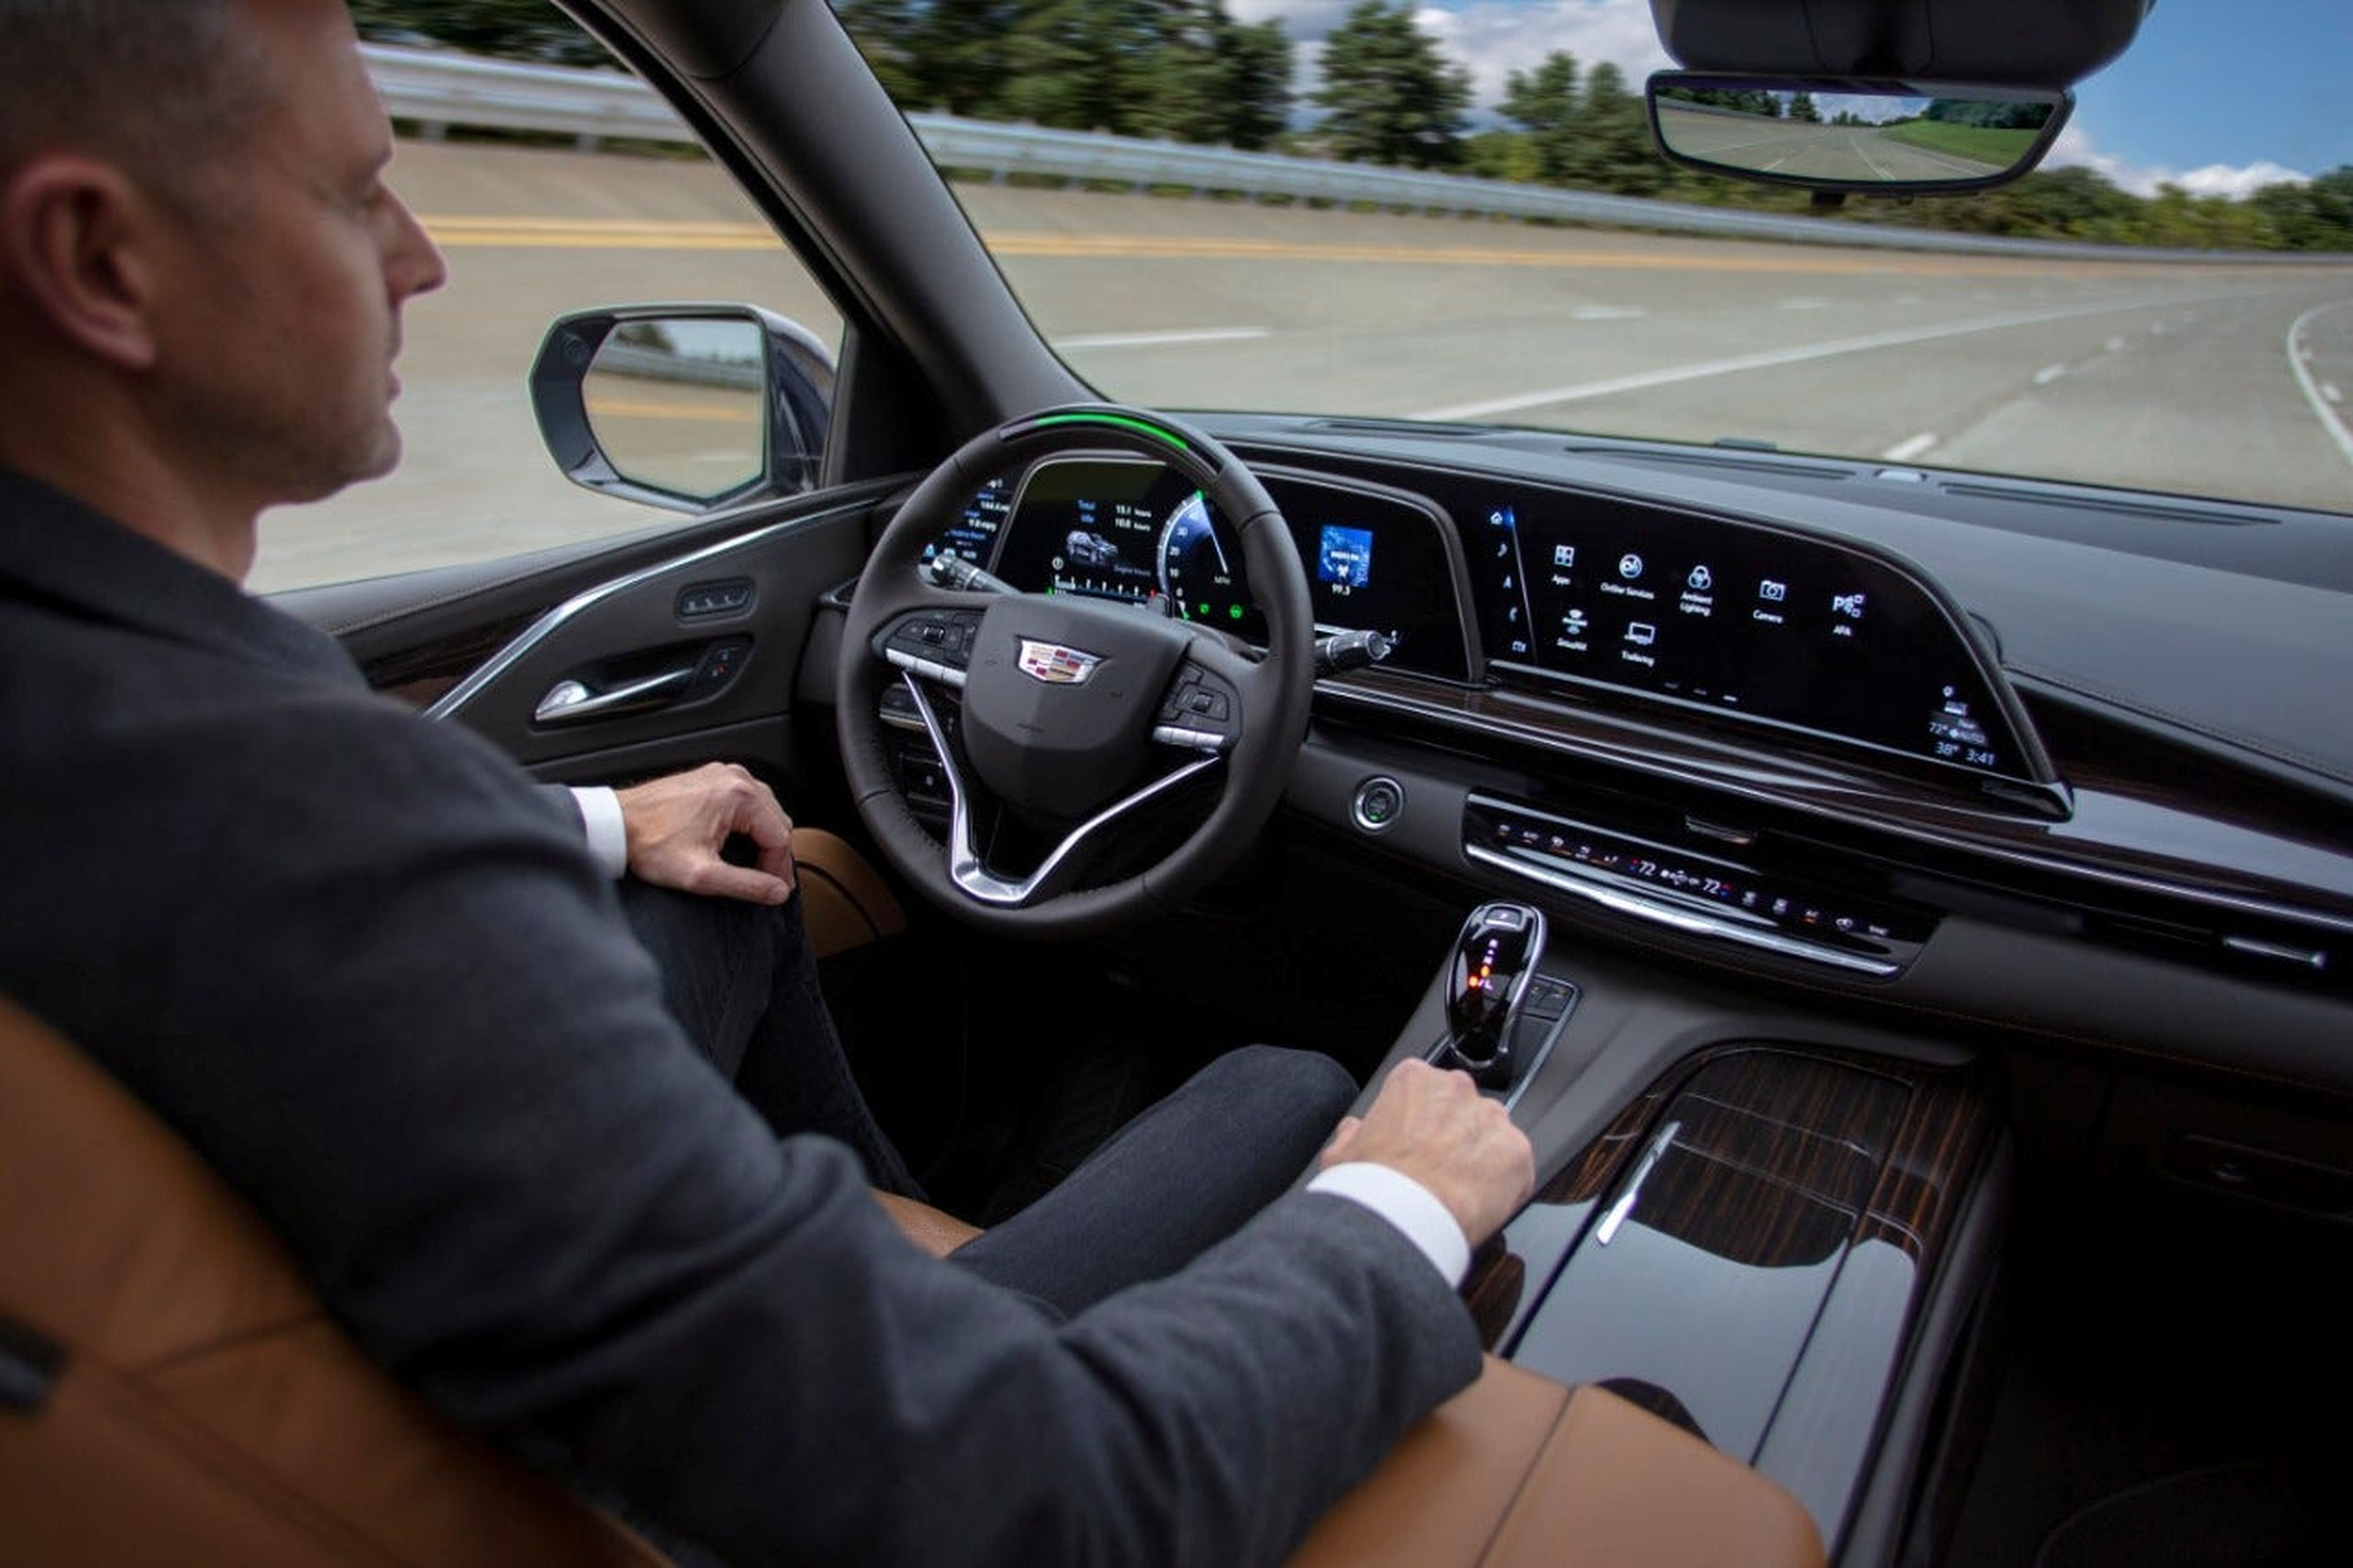 2021 Cadillac Escalade SUV con asistencia a la conducción manos libres Super Cruise de General Motors.